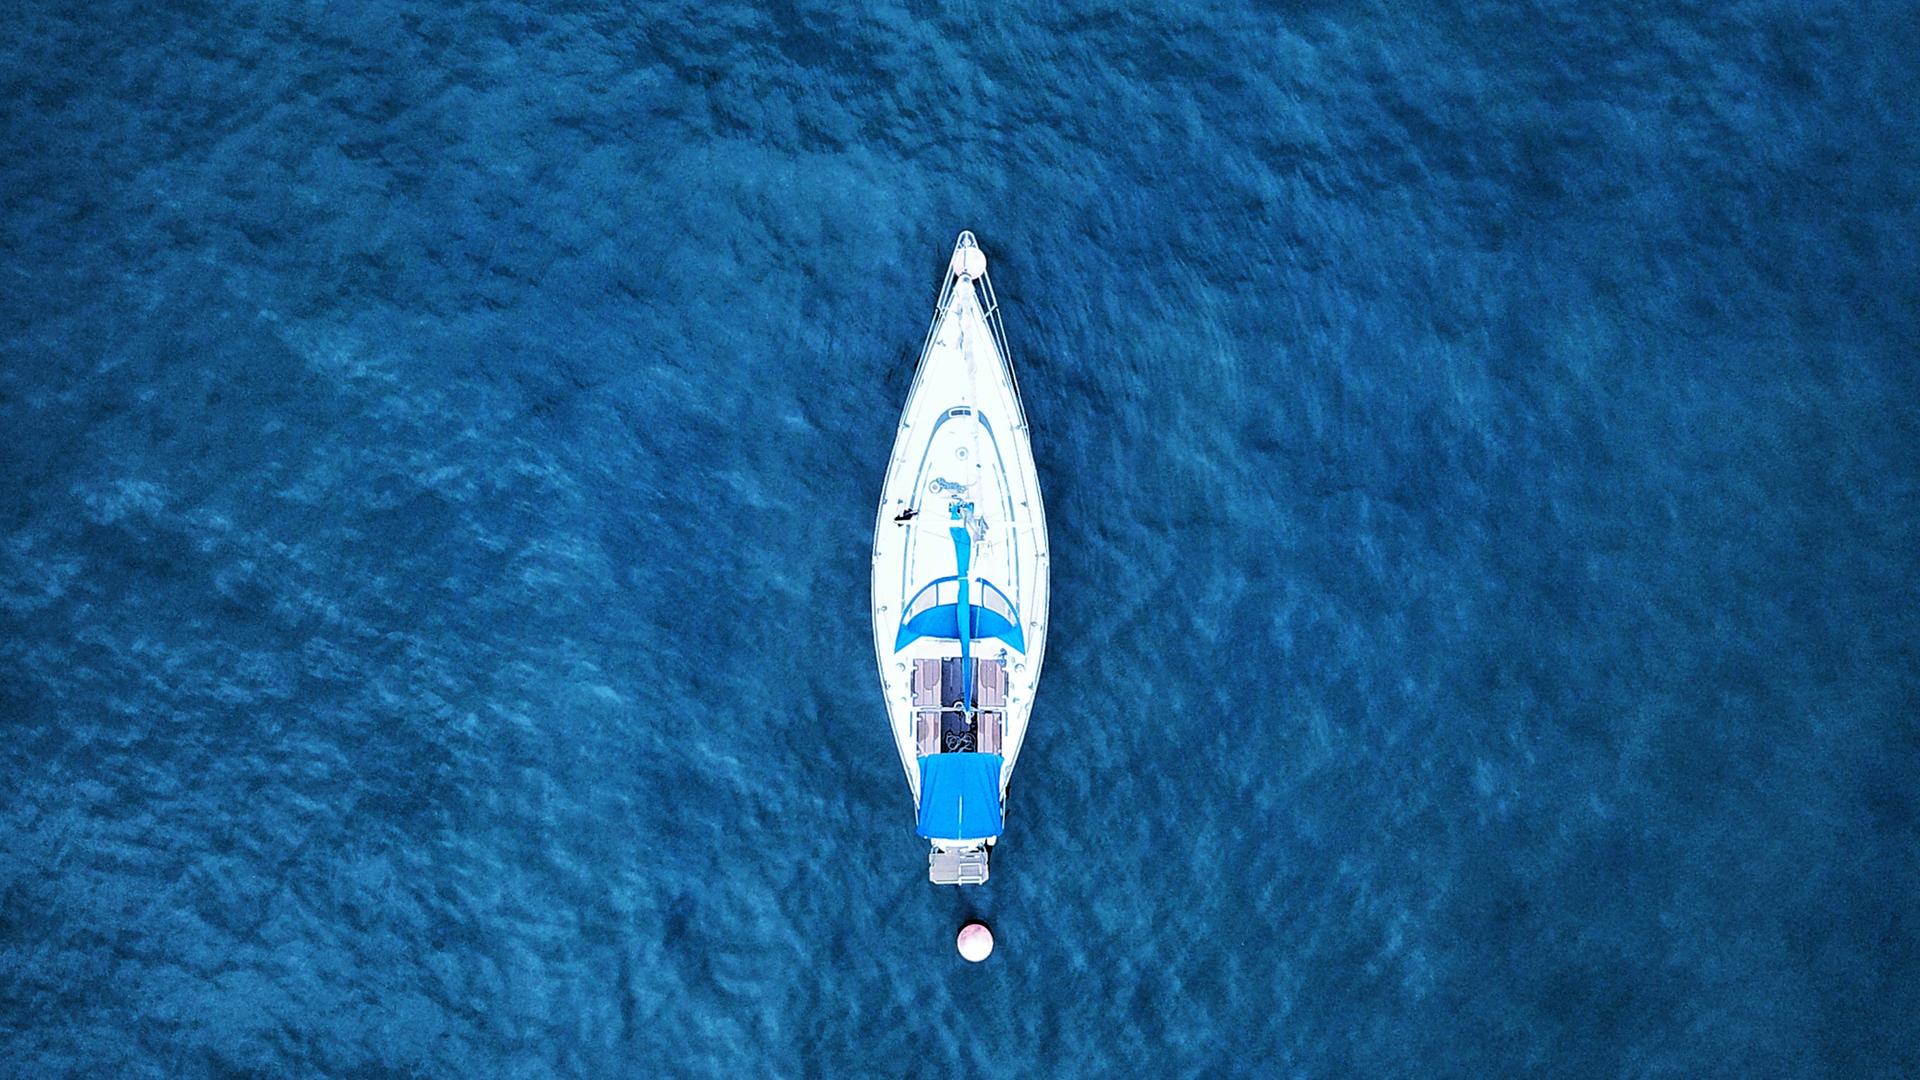 Jähnicke entdeckt eine Yacht, die verlassen auf dem Meer treibt. An Deck: Ein Toter. Zu sehen: Ein Boot auf offener blauer See.